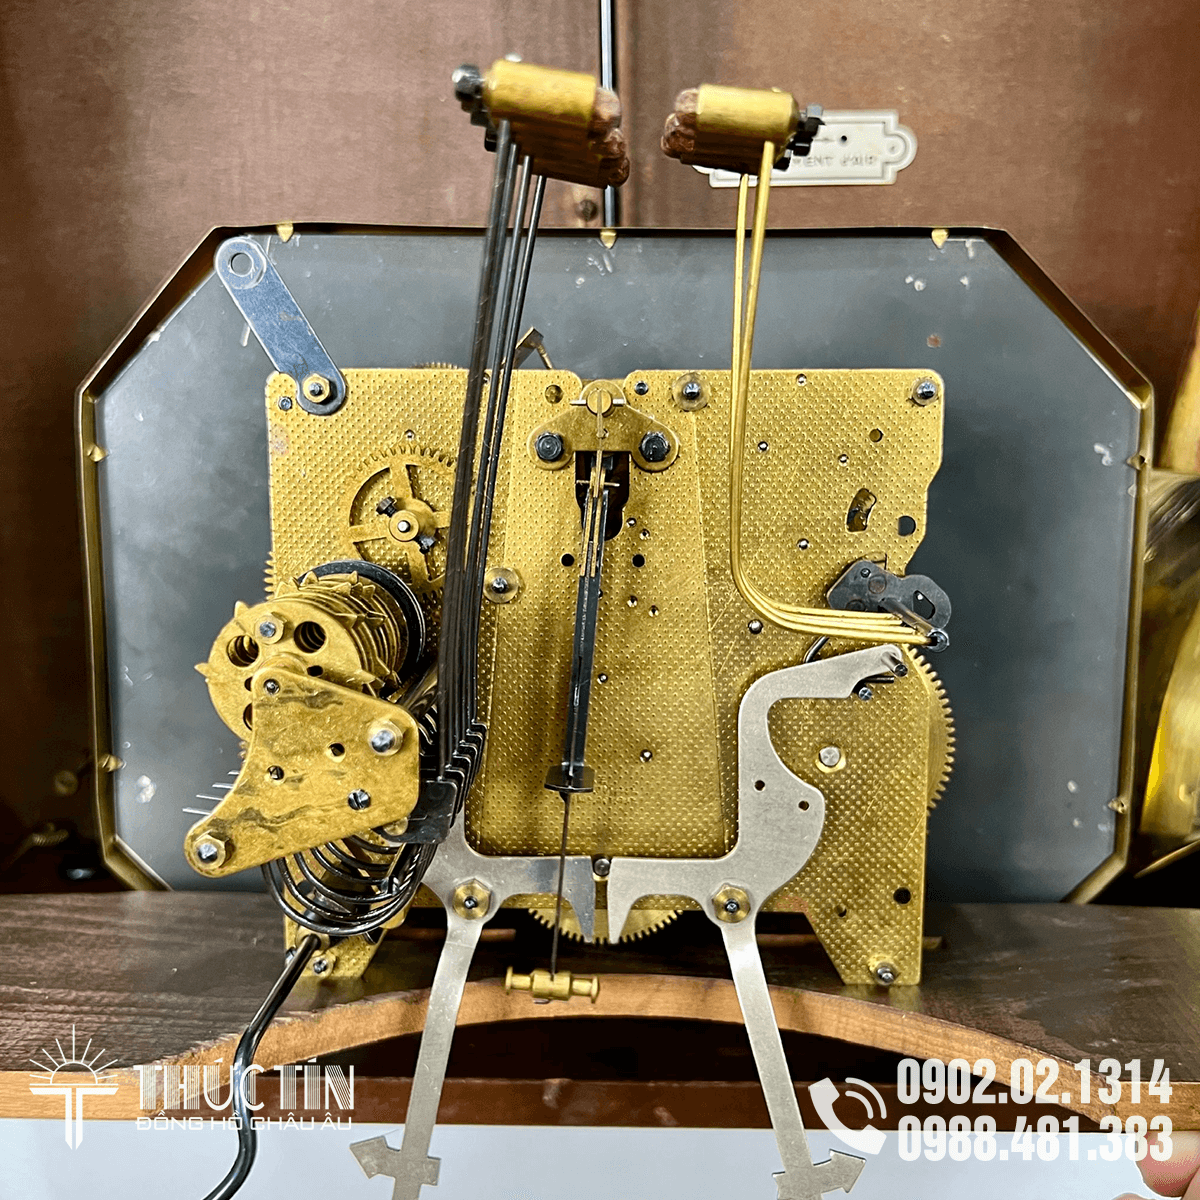 N415: Đồng hồ ODO 30 - 6 gông 8 búa thùng có chạm khắc - Đồng hồ quả lắc